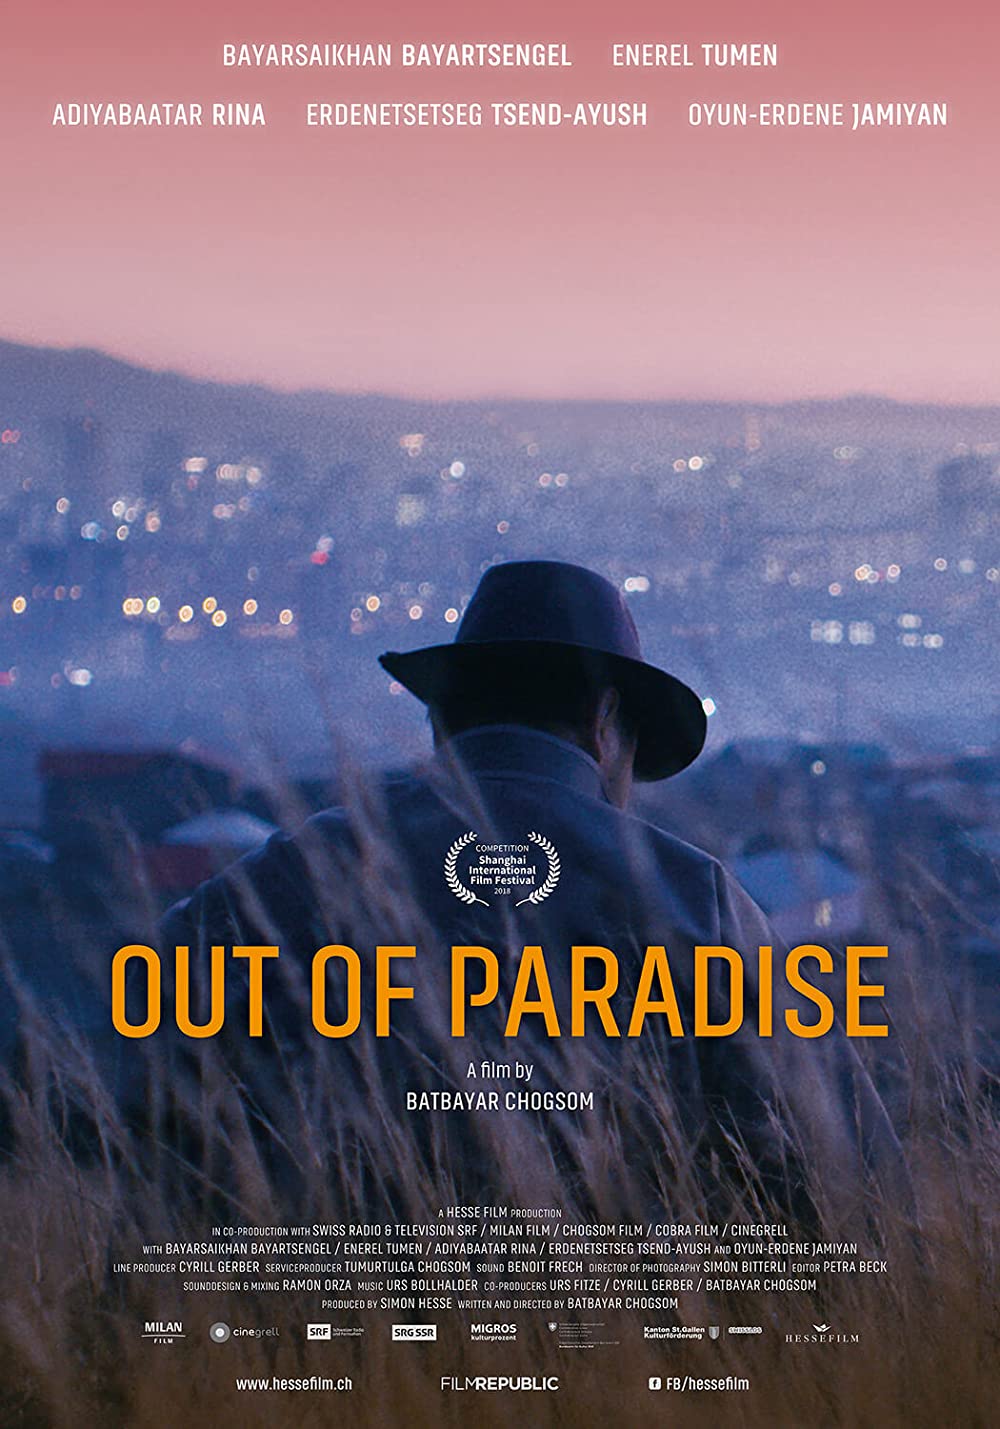 Filmbeschreibung zu Out of Paradise